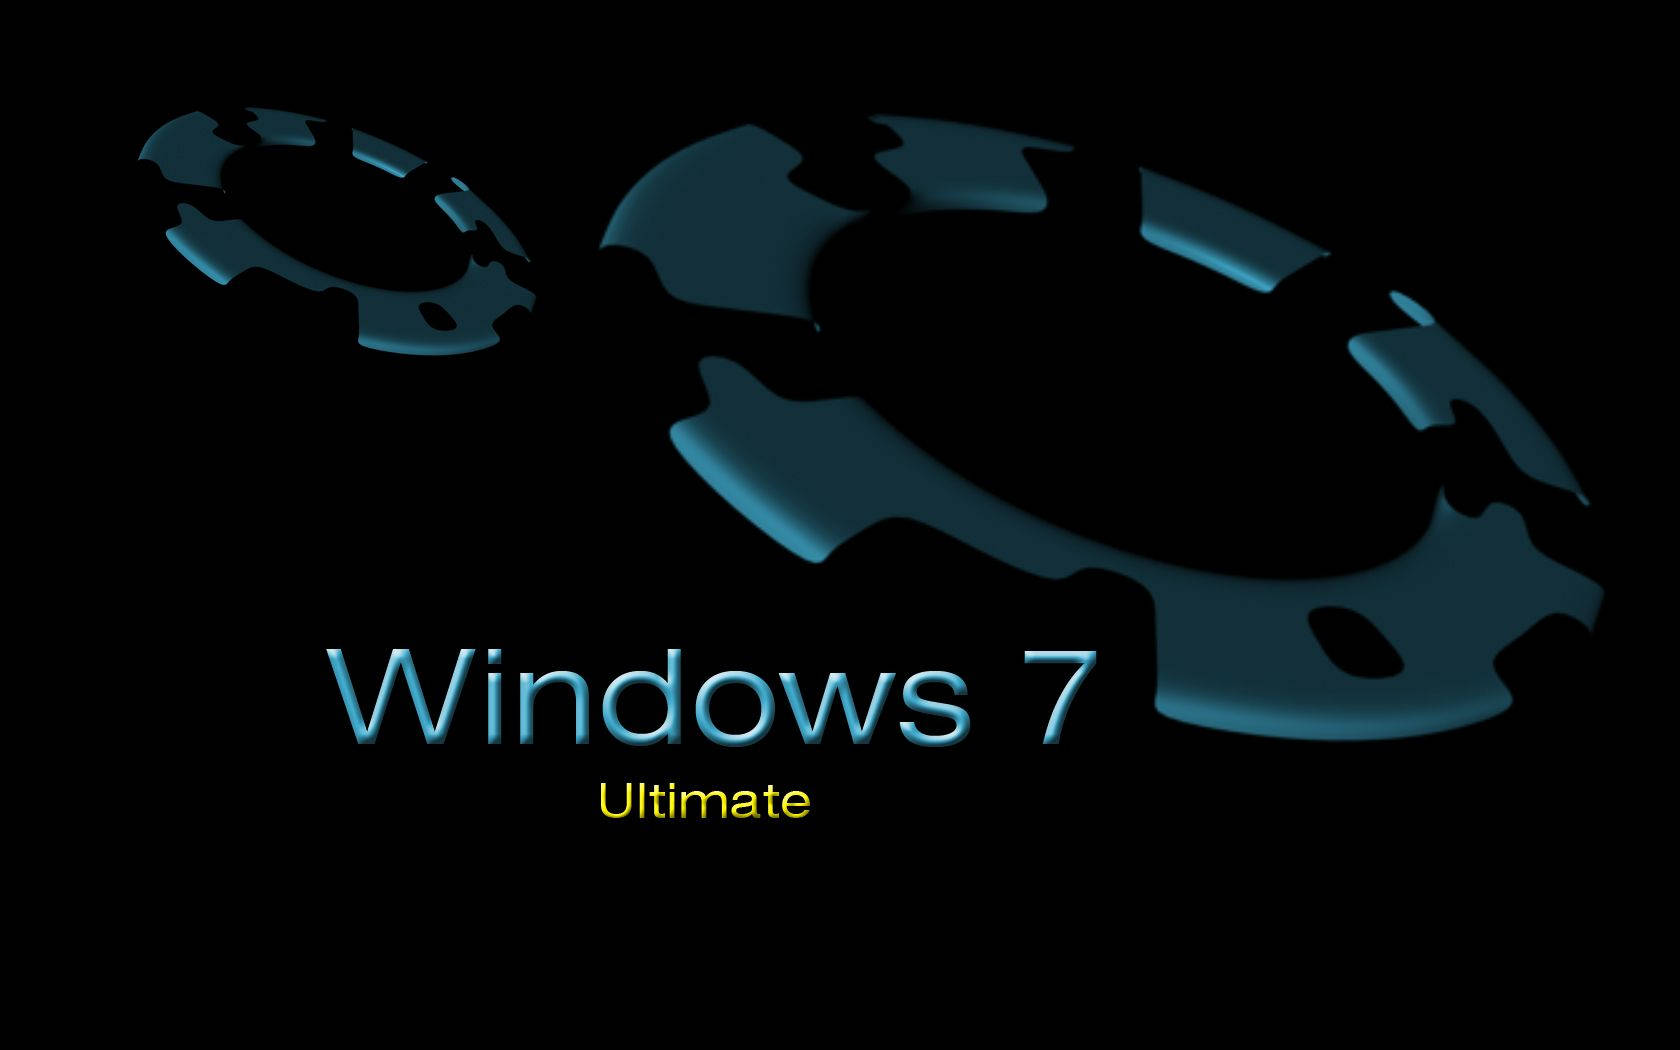 Ultimate Window 7